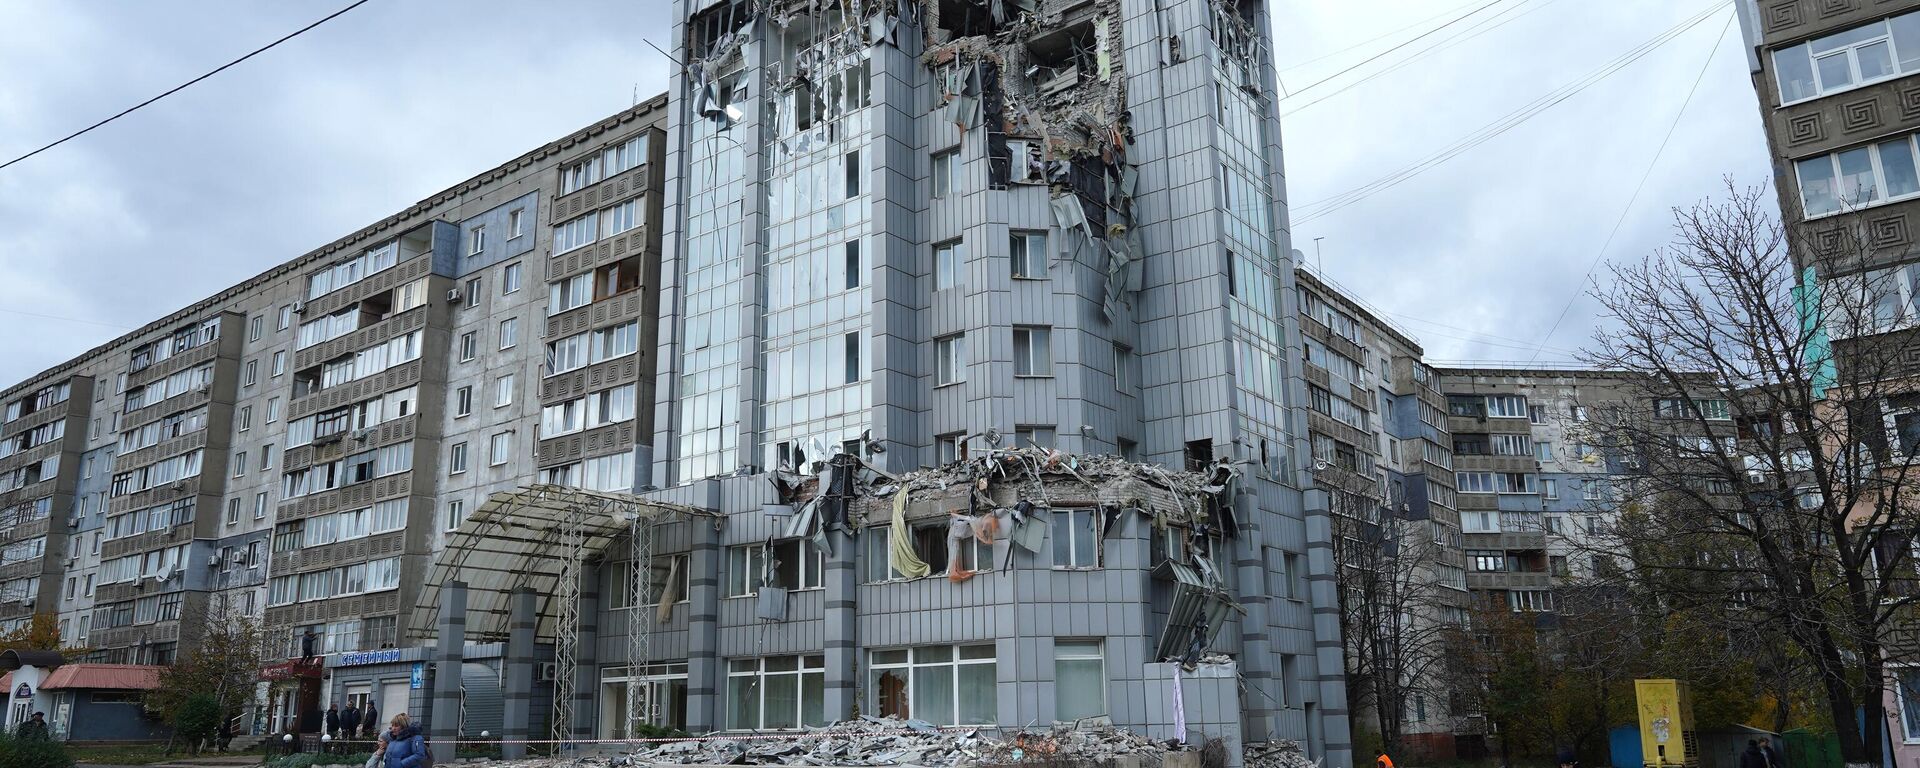 Edificio dañado por bombardeos Himars en Lugansk   - Sputnik Mundo, 1920, 12.05.2023